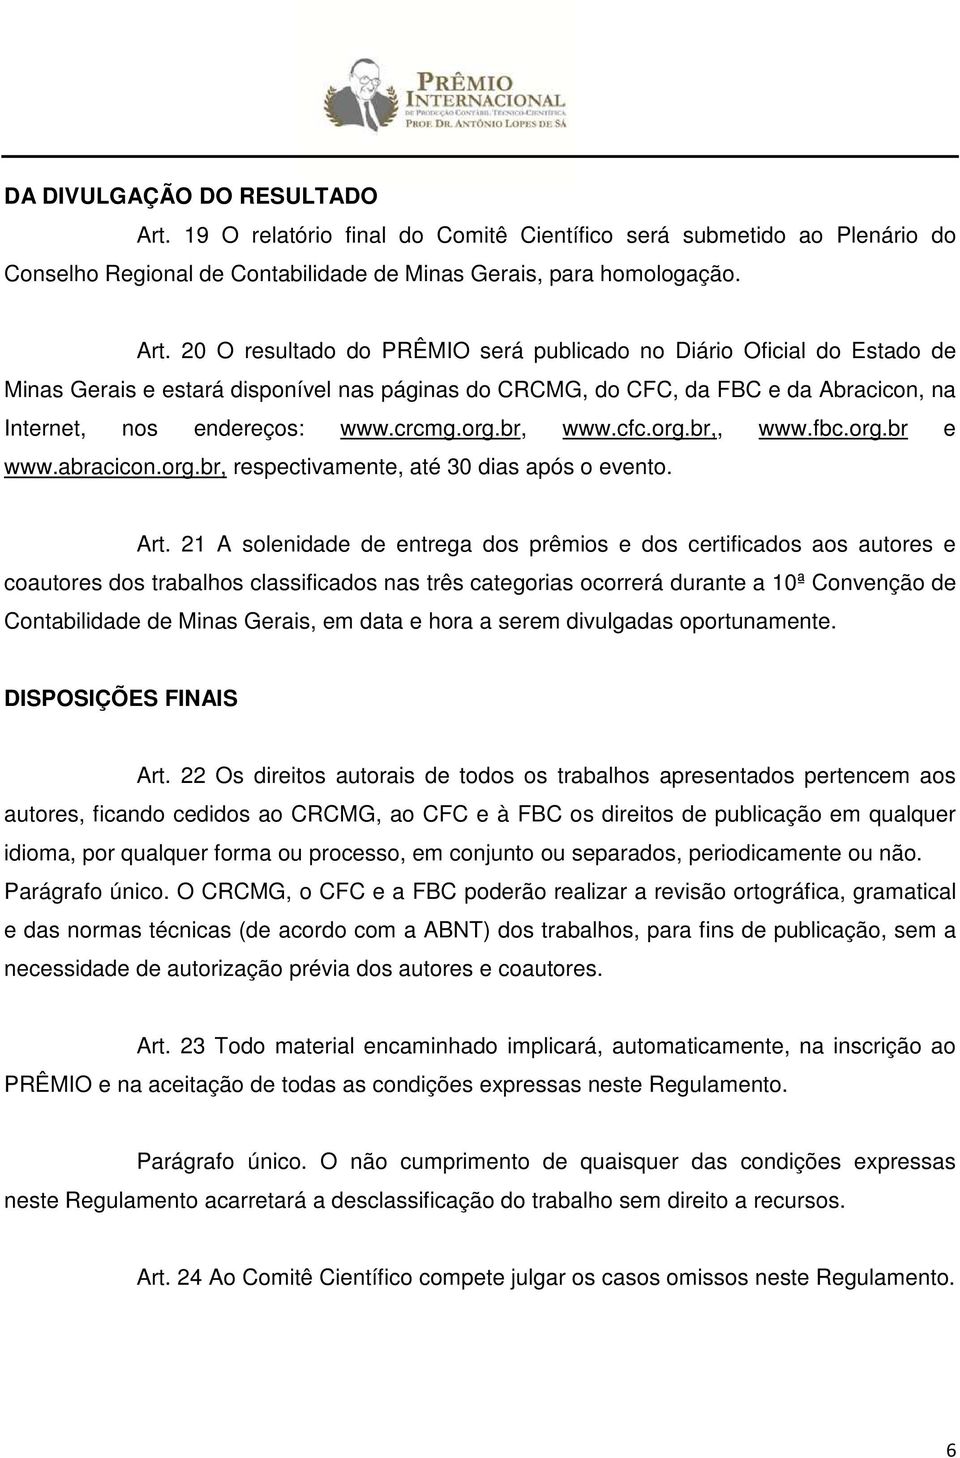 20 O resultado do PRÊMIO será publicado no Diário Oficial do Estado de Minas Gerais e estará disponível nas páginas do CRCMG, do CFC, da FBC e da Abracicon, na Internet, nos endereços: www.crcmg.org.